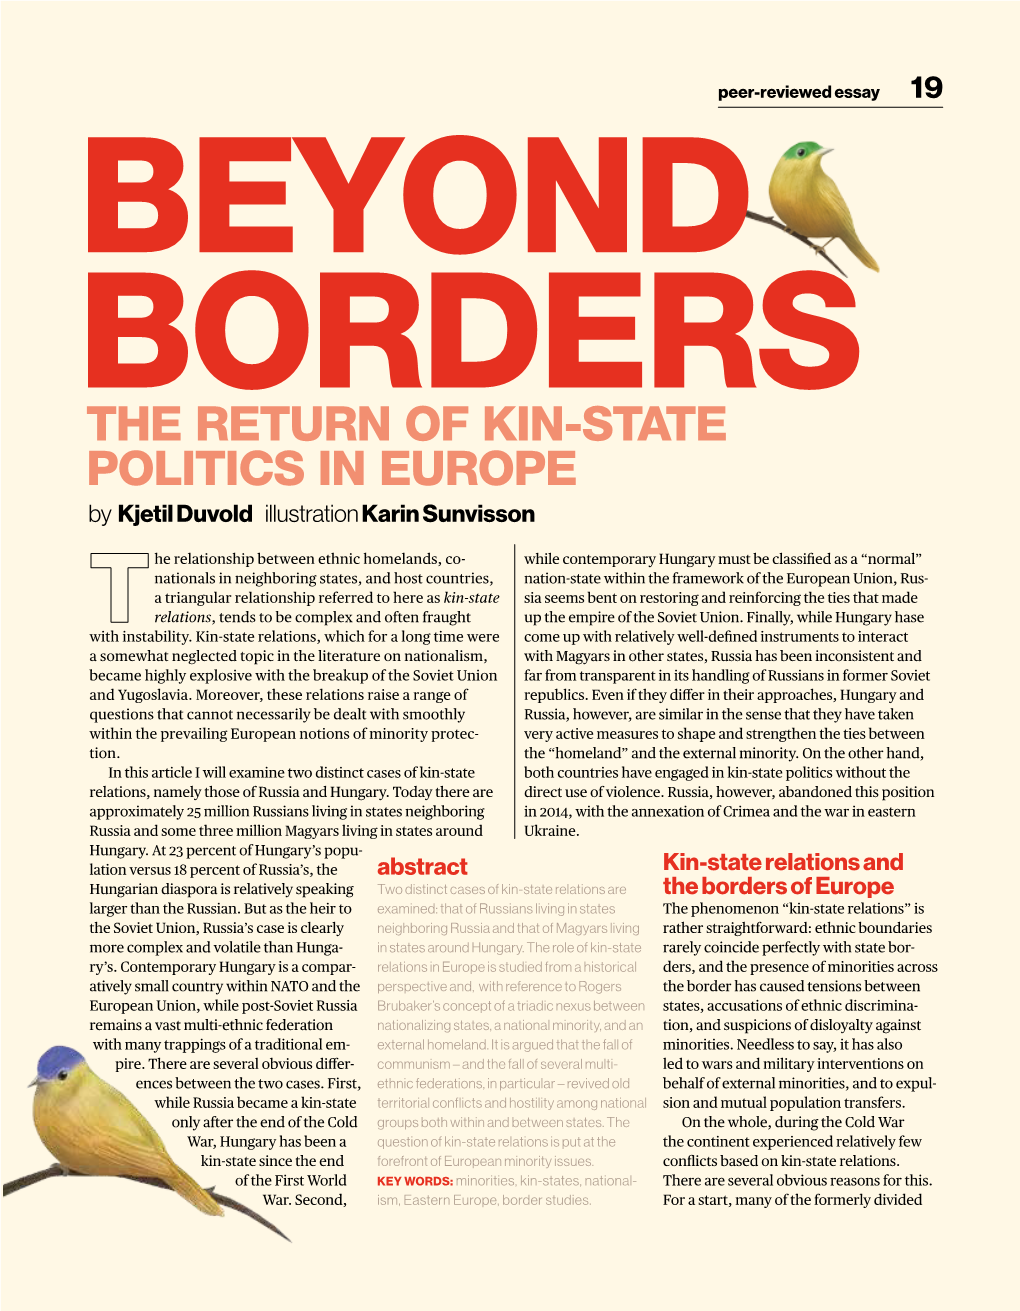 The Return of Kin-State Politics in Europe by Kjetil Duvold Illustration Karin Sunvisson